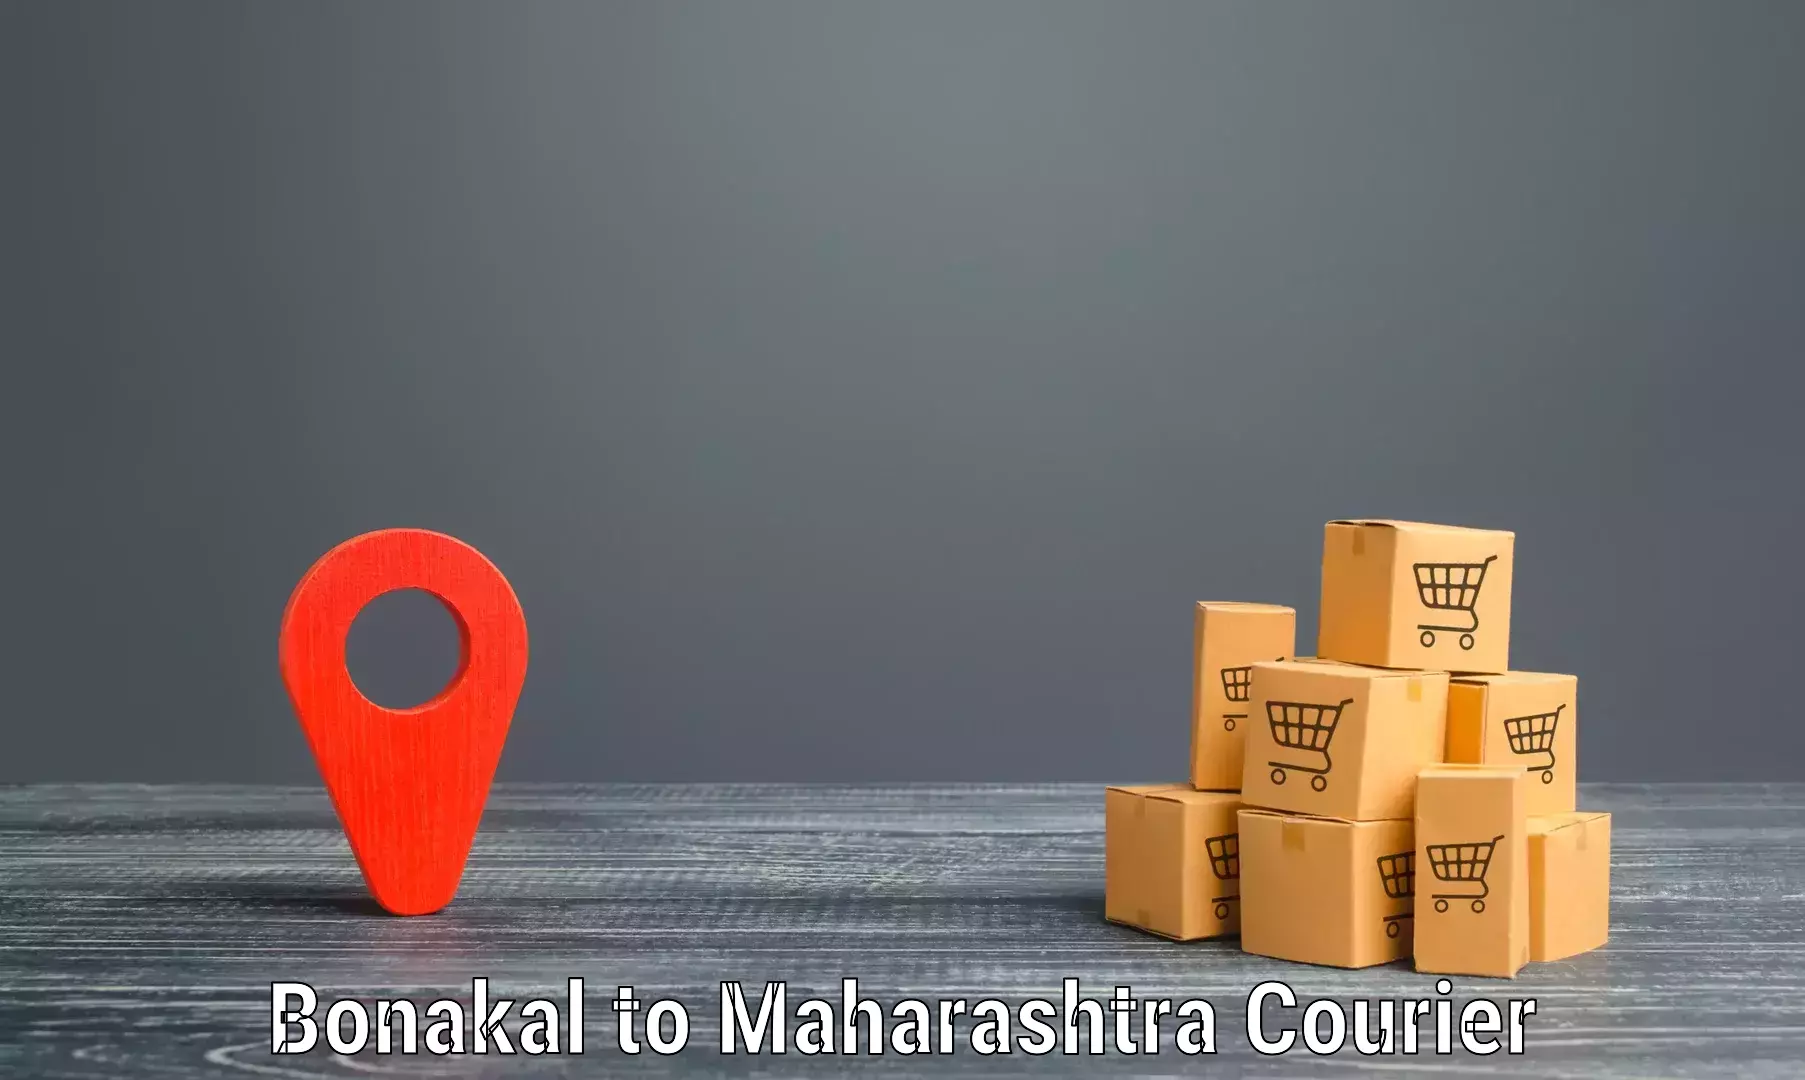 High-capacity parcel service Bonakal to Maharashtra